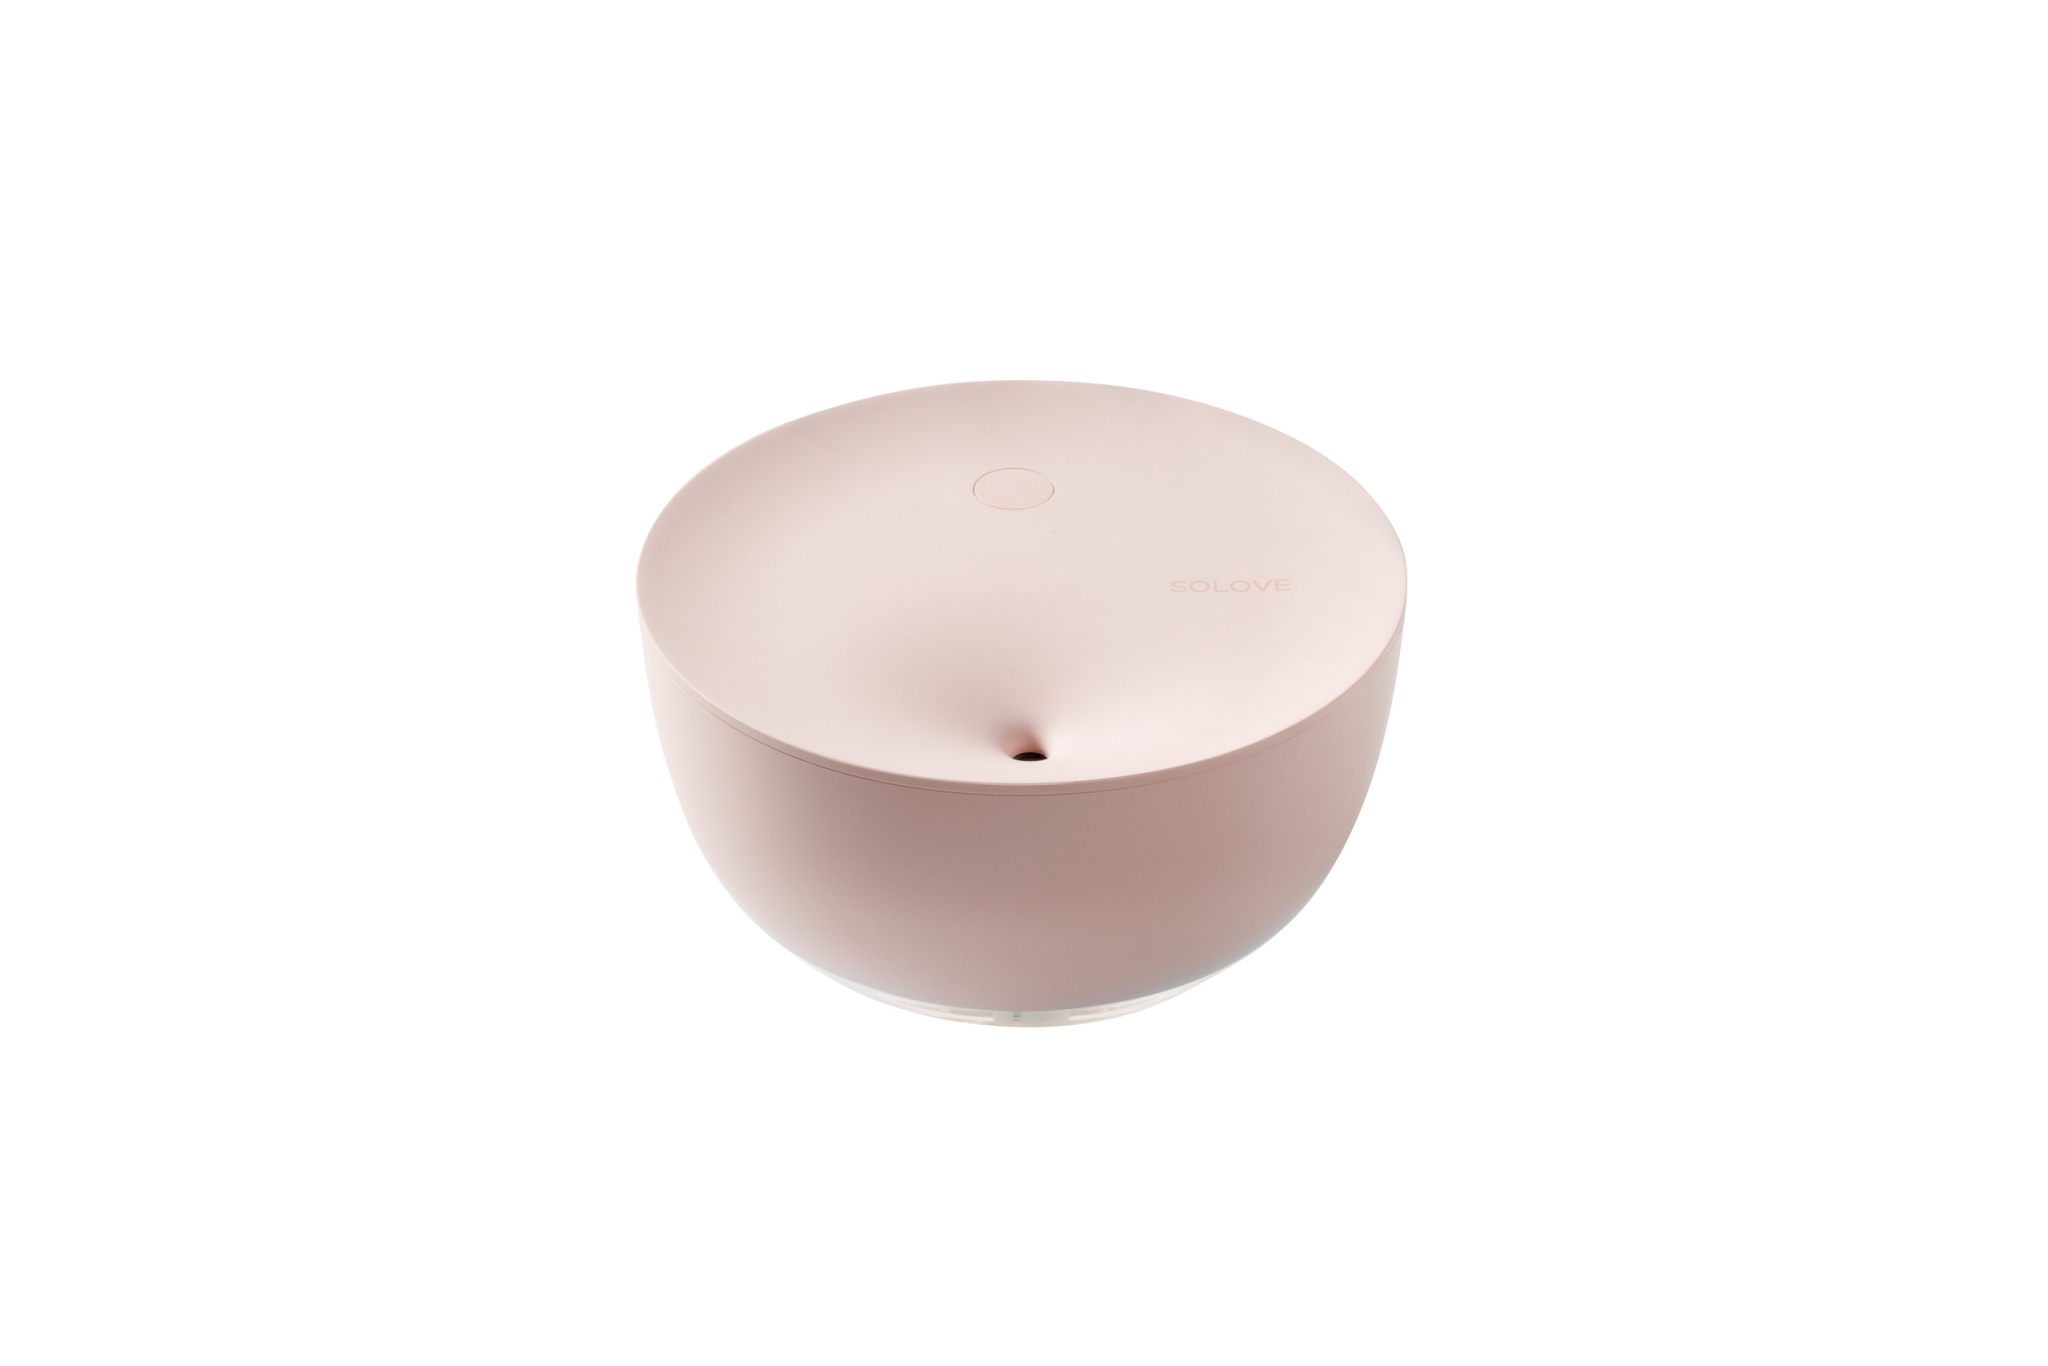 Портативный увлажнитель воздуха Solove Dekstop Humidifier H1, розовый, розовый, пластик